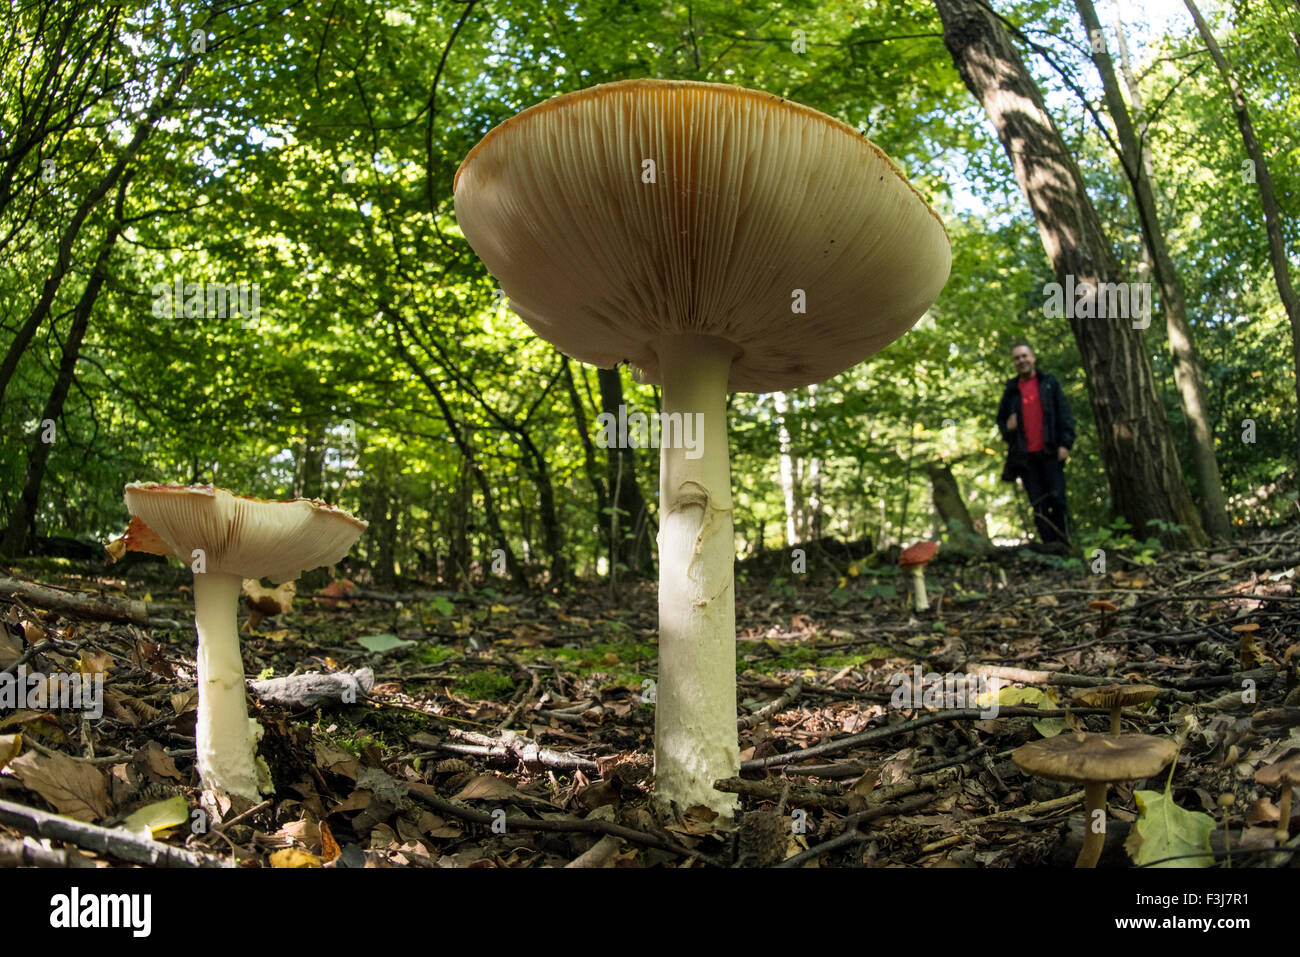 Entonnoir commun (Clitocybe gibba) champignons close up avec l'homme dans l'arrière-plan dans la forêt d'Epping, Angleterre, Grande-Bretagne, United Kingd Banque D'Images